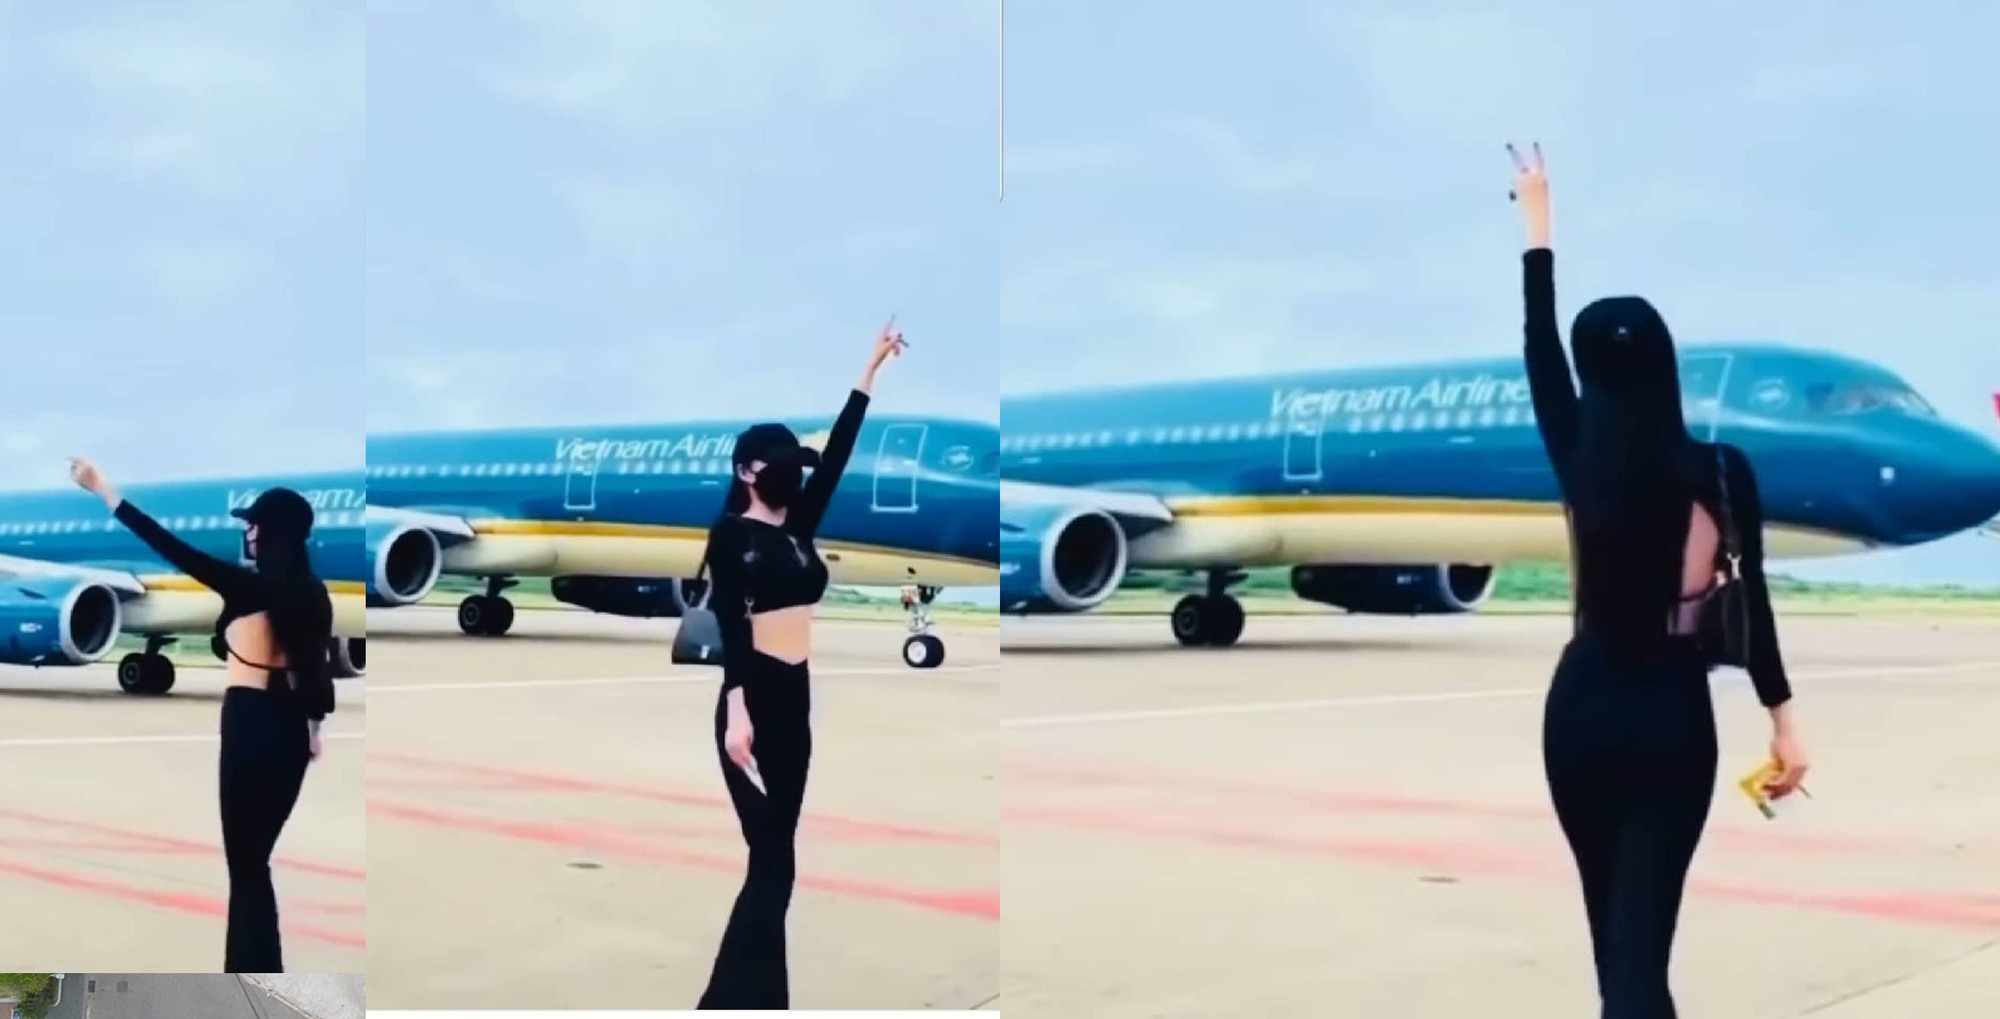 Cô gái nhảy múa quay Tiktok trước máy bay Vietnam Airlines bị cấm bay - Ảnh 1.